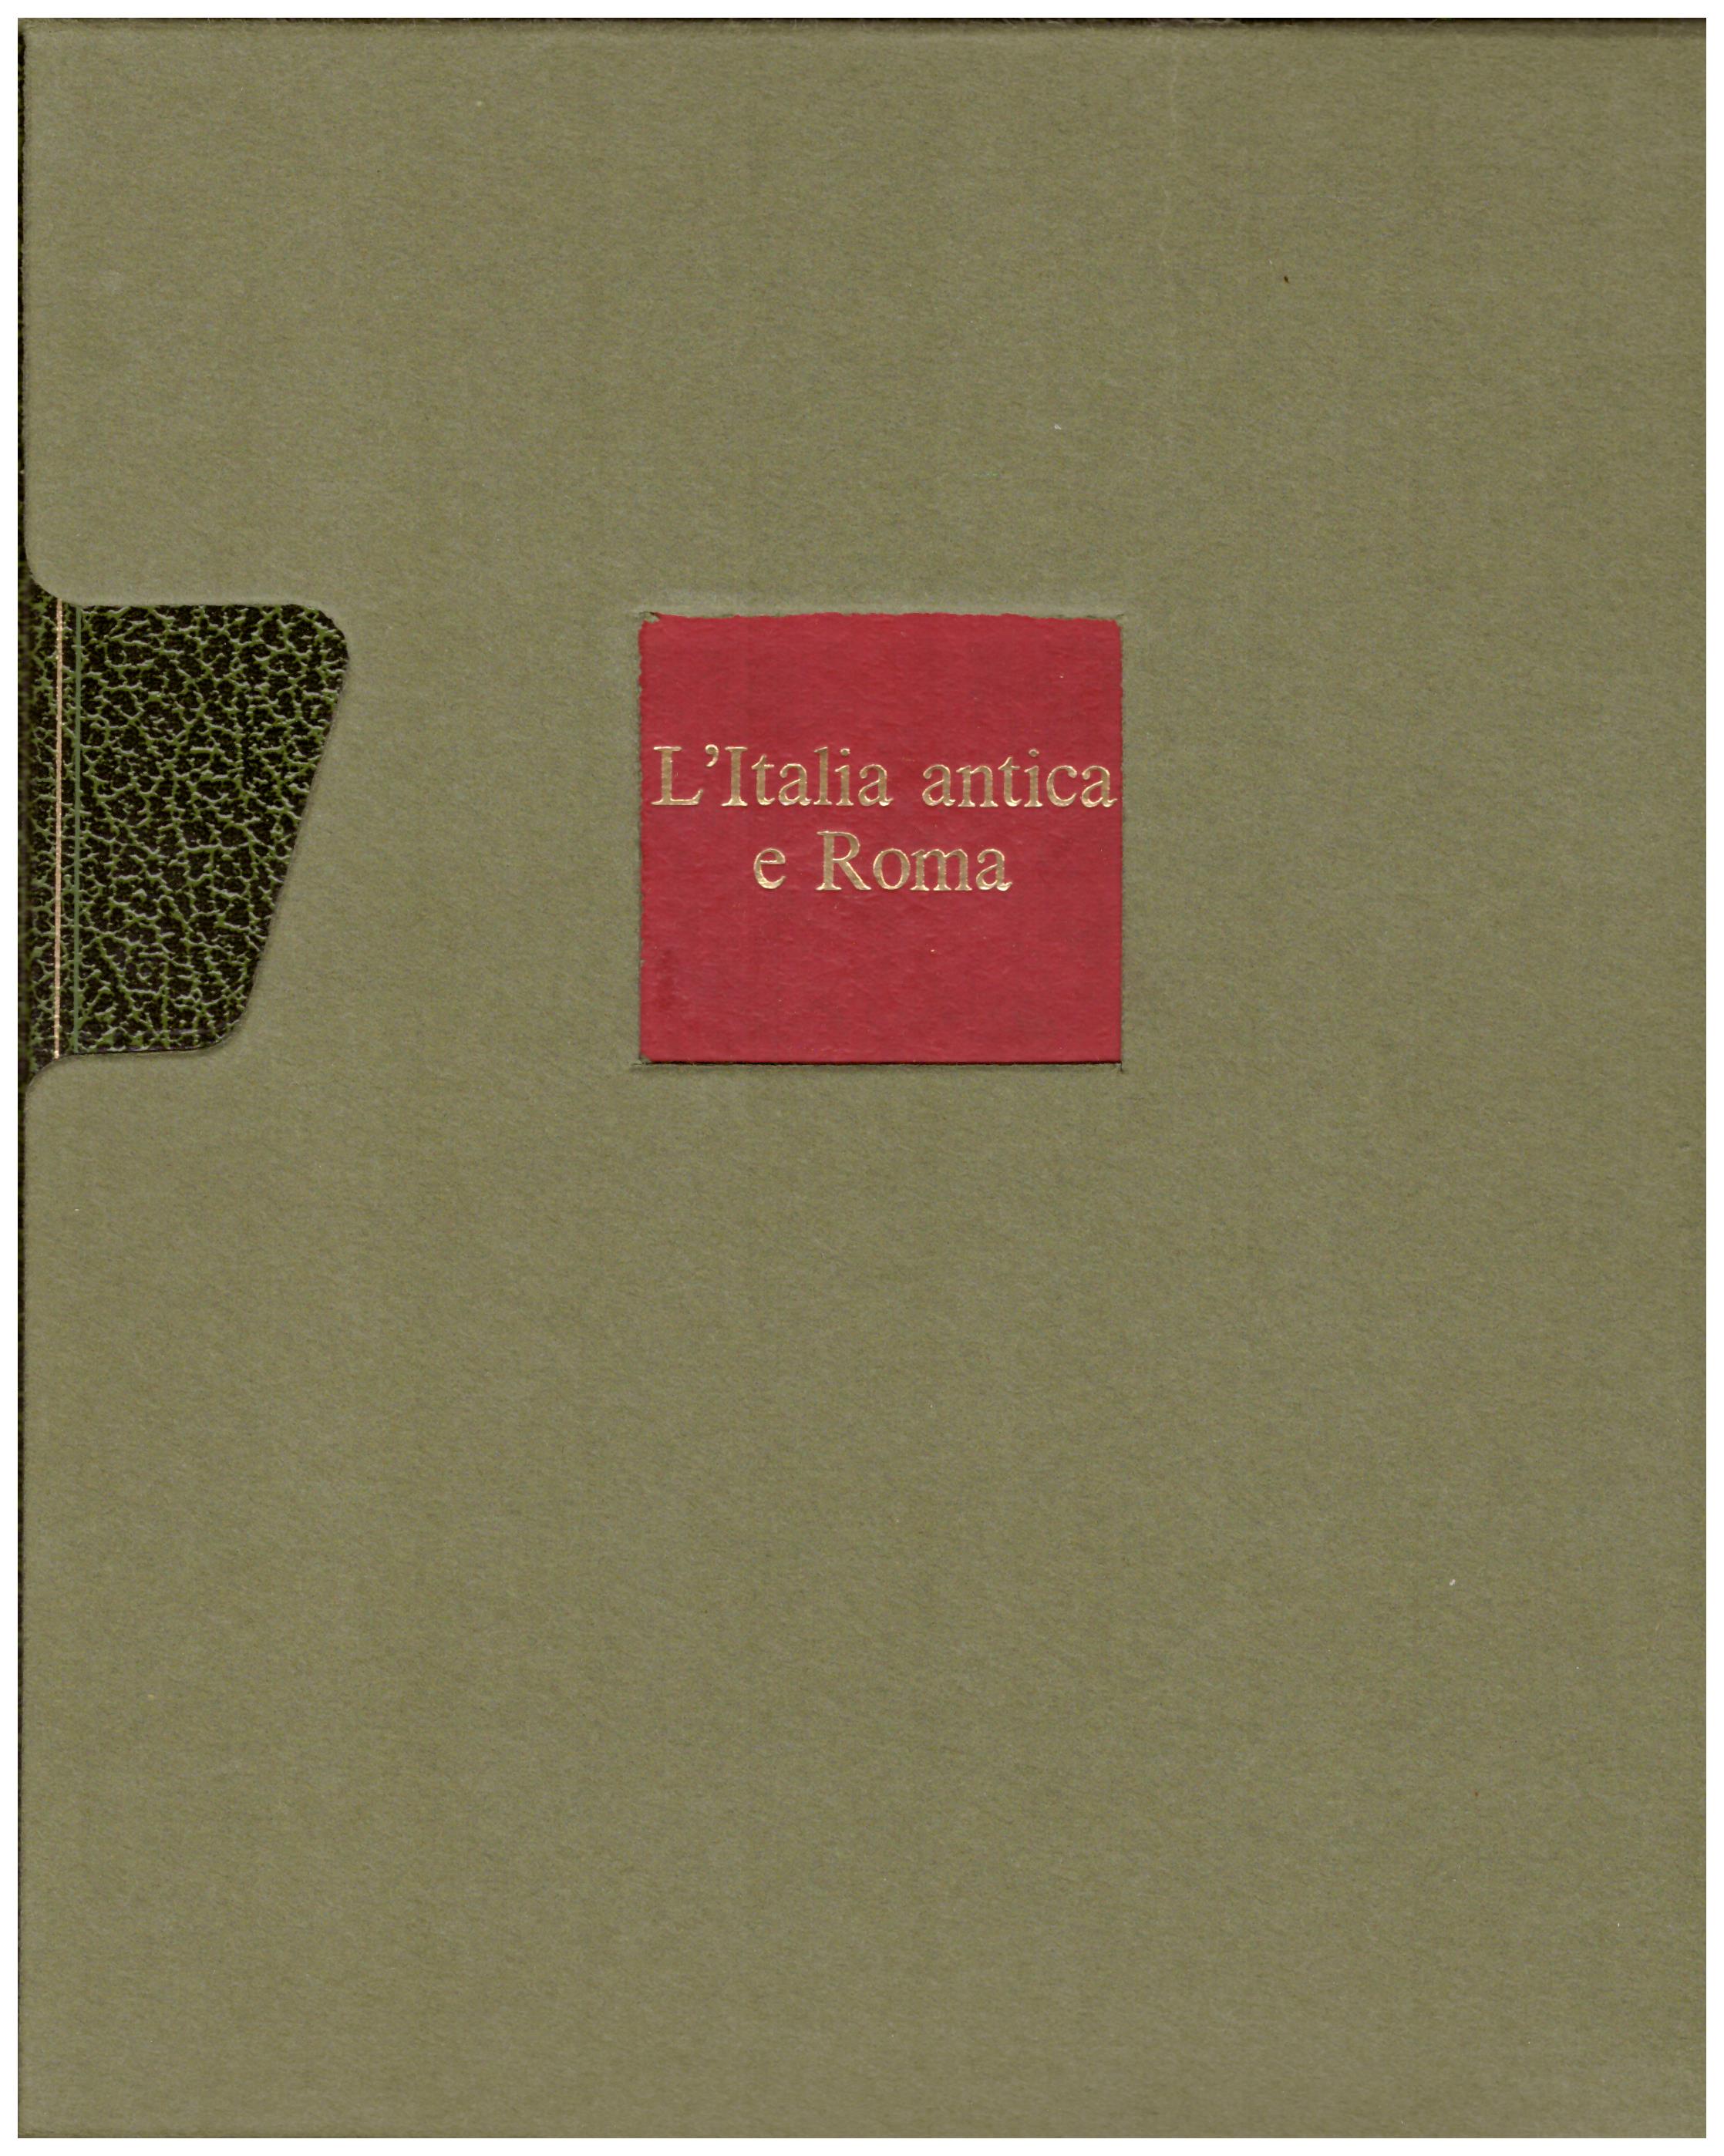 Titolo: L'arte nel mondo n.5 L'Italia antica e Roma Autore: German Hafner Editore: Rizzoli, 1970